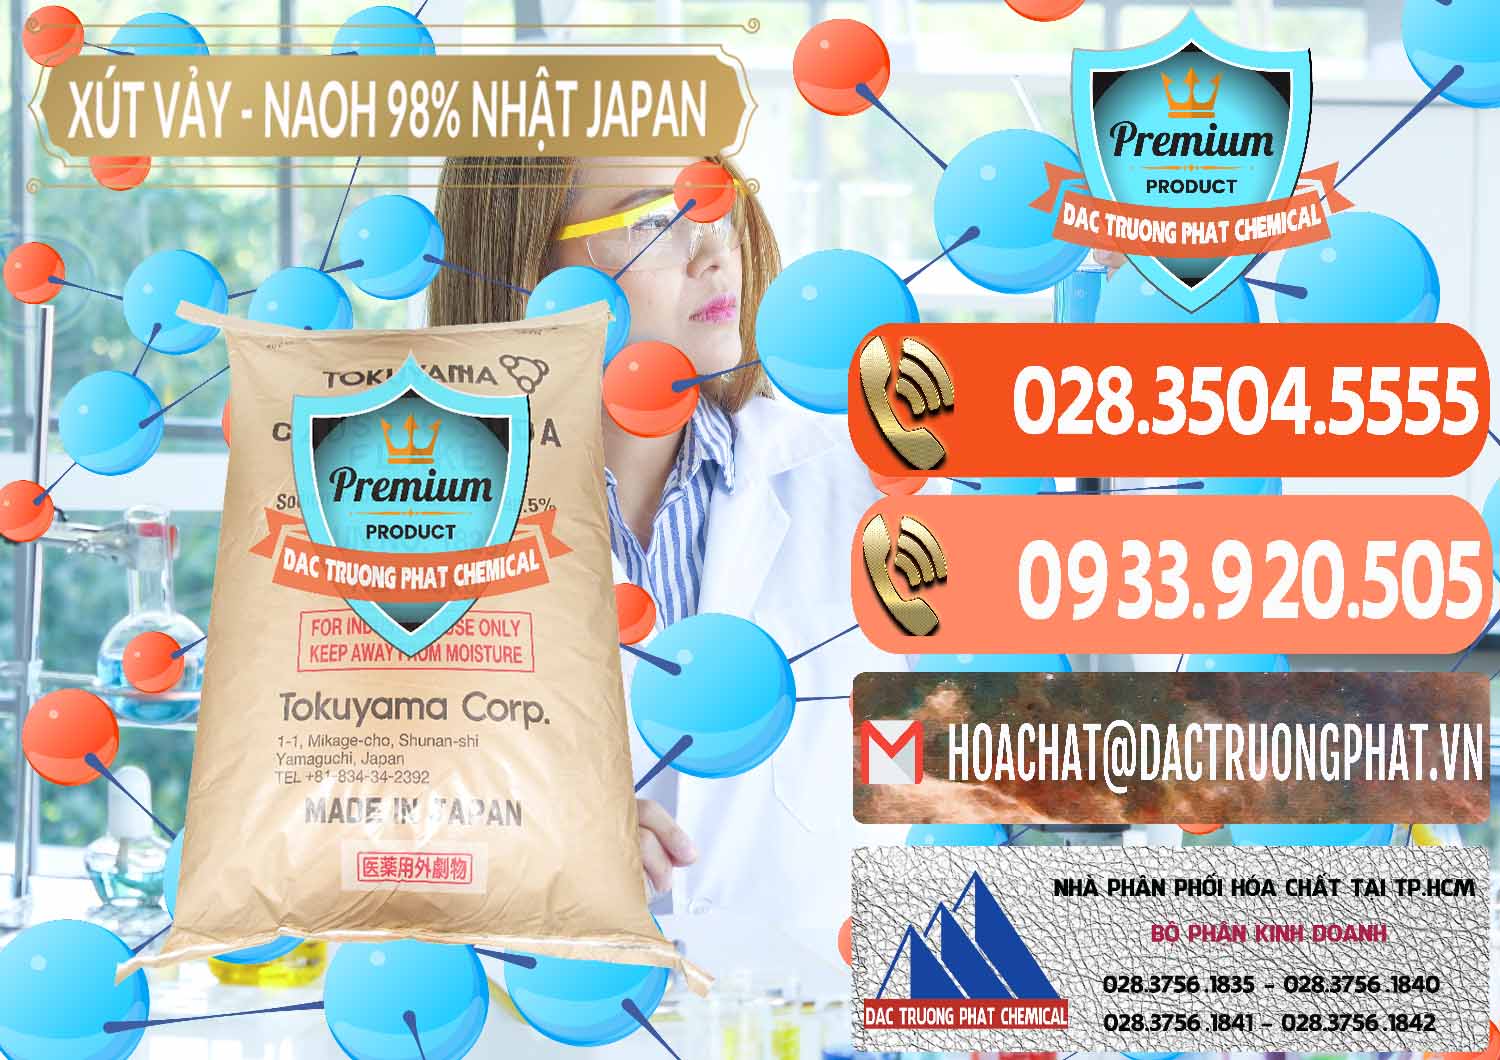 Cty chuyên phân phối & bán Xút Vảy - NaOH Vảy 98% Tokuyama Nhật Bản Japan - 0173 - Chuyên bán _ phân phối hóa chất tại TP.HCM - hoachatmientay.com